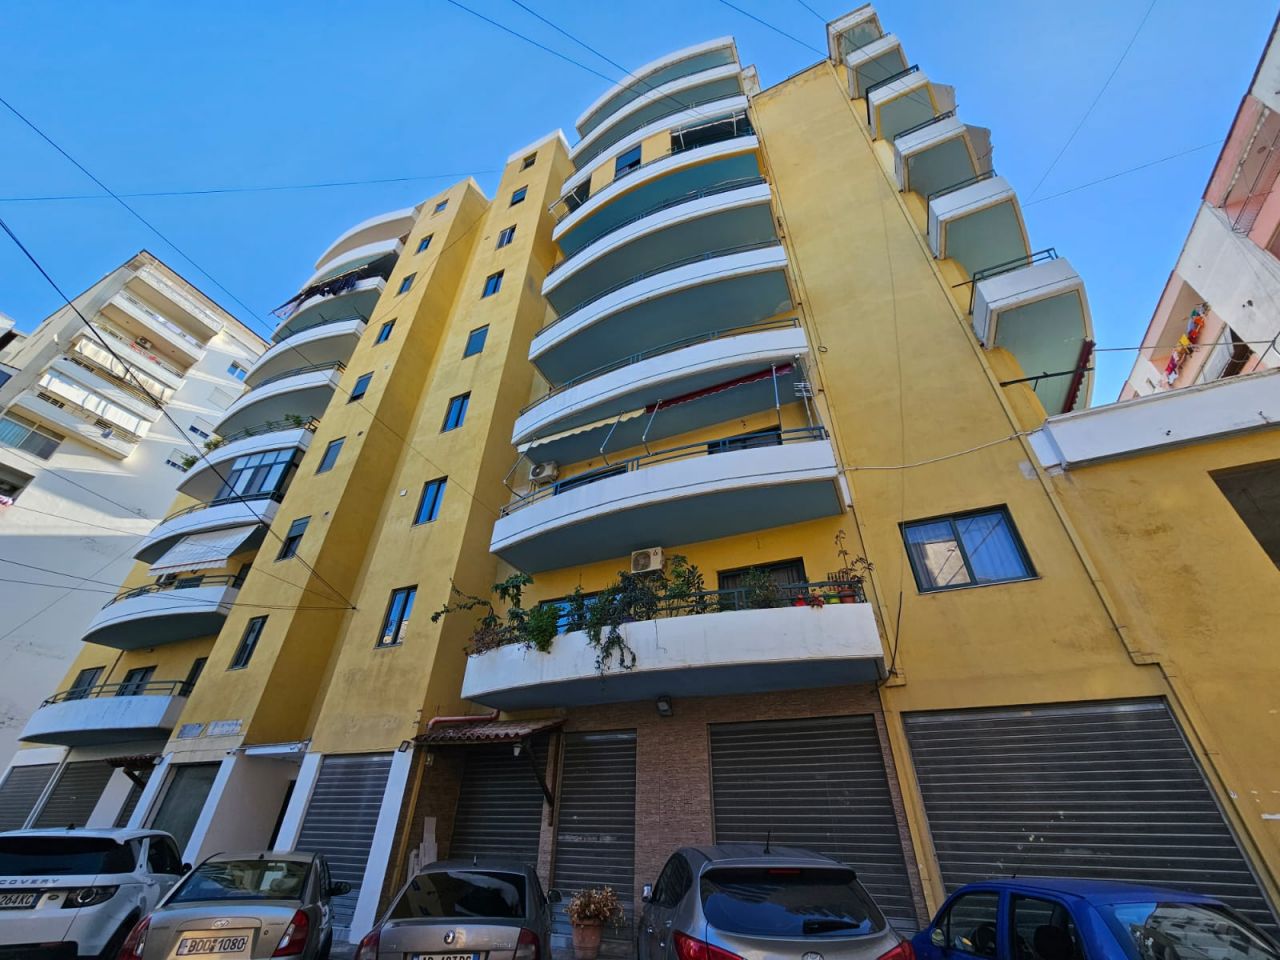 Penthouse zum Verkauf in der Stadt Vlore